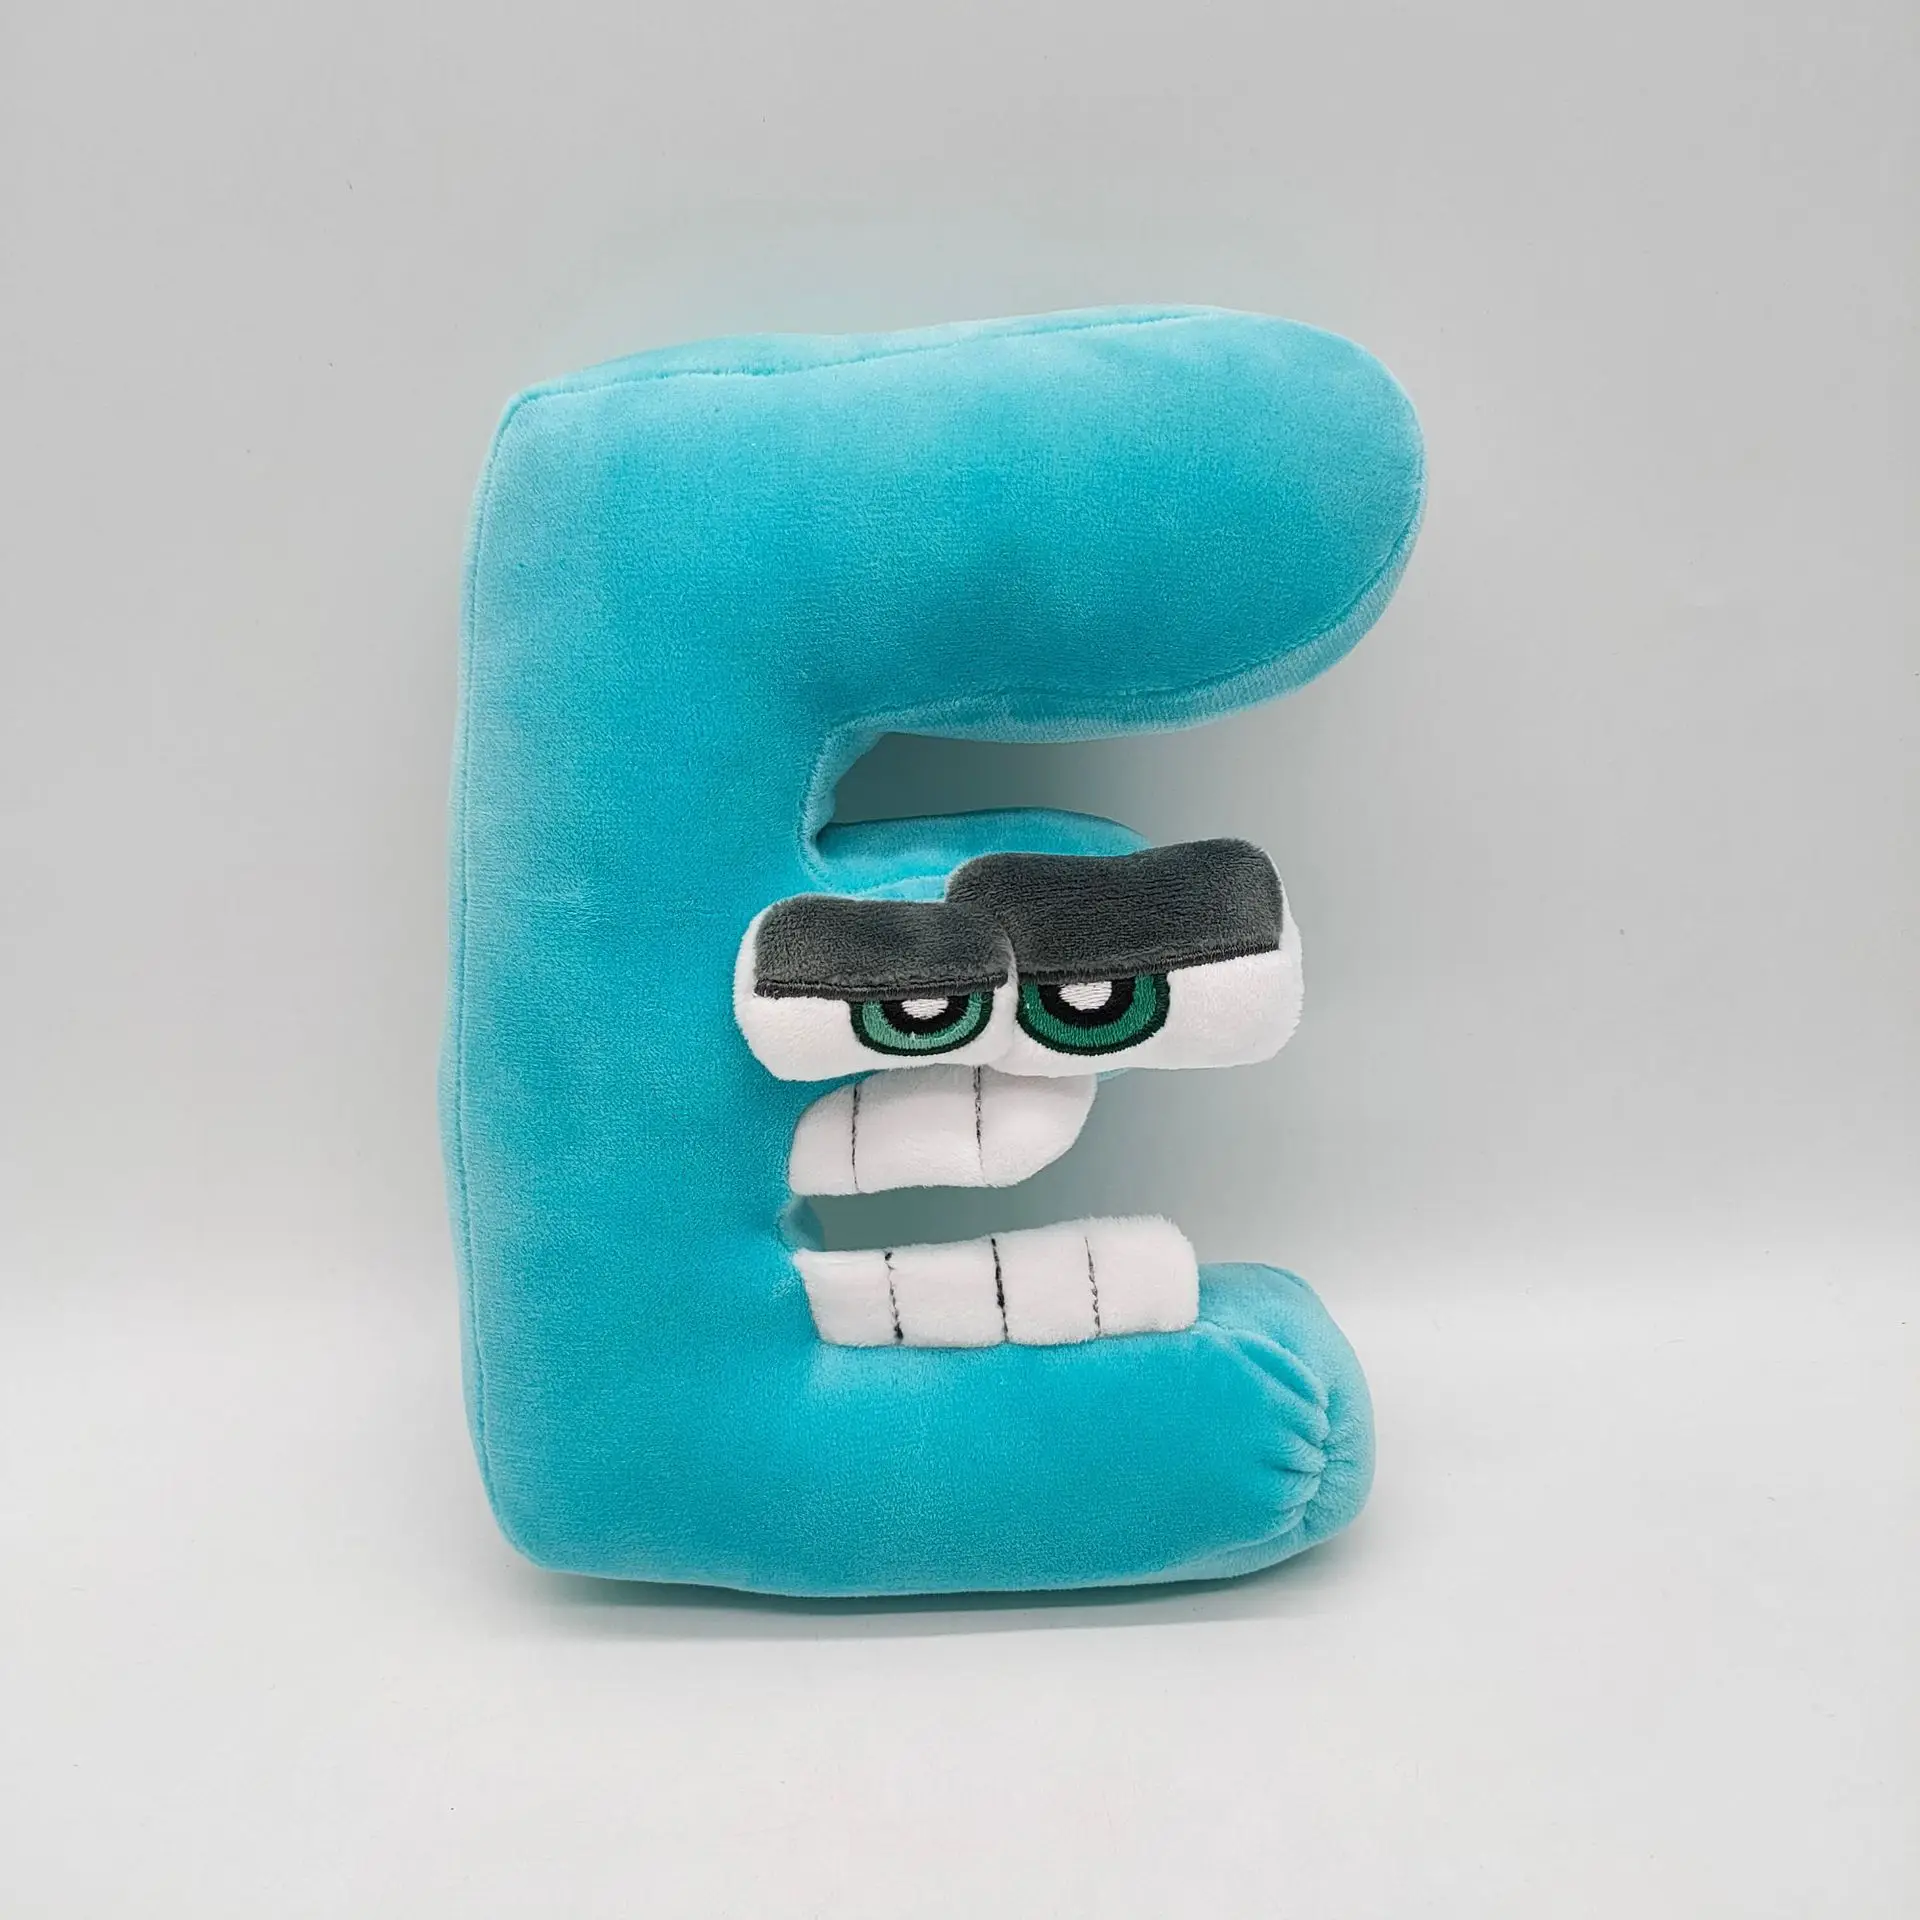 Letter Monster Alphabetlore Letter Legend Plush Pillow Doll